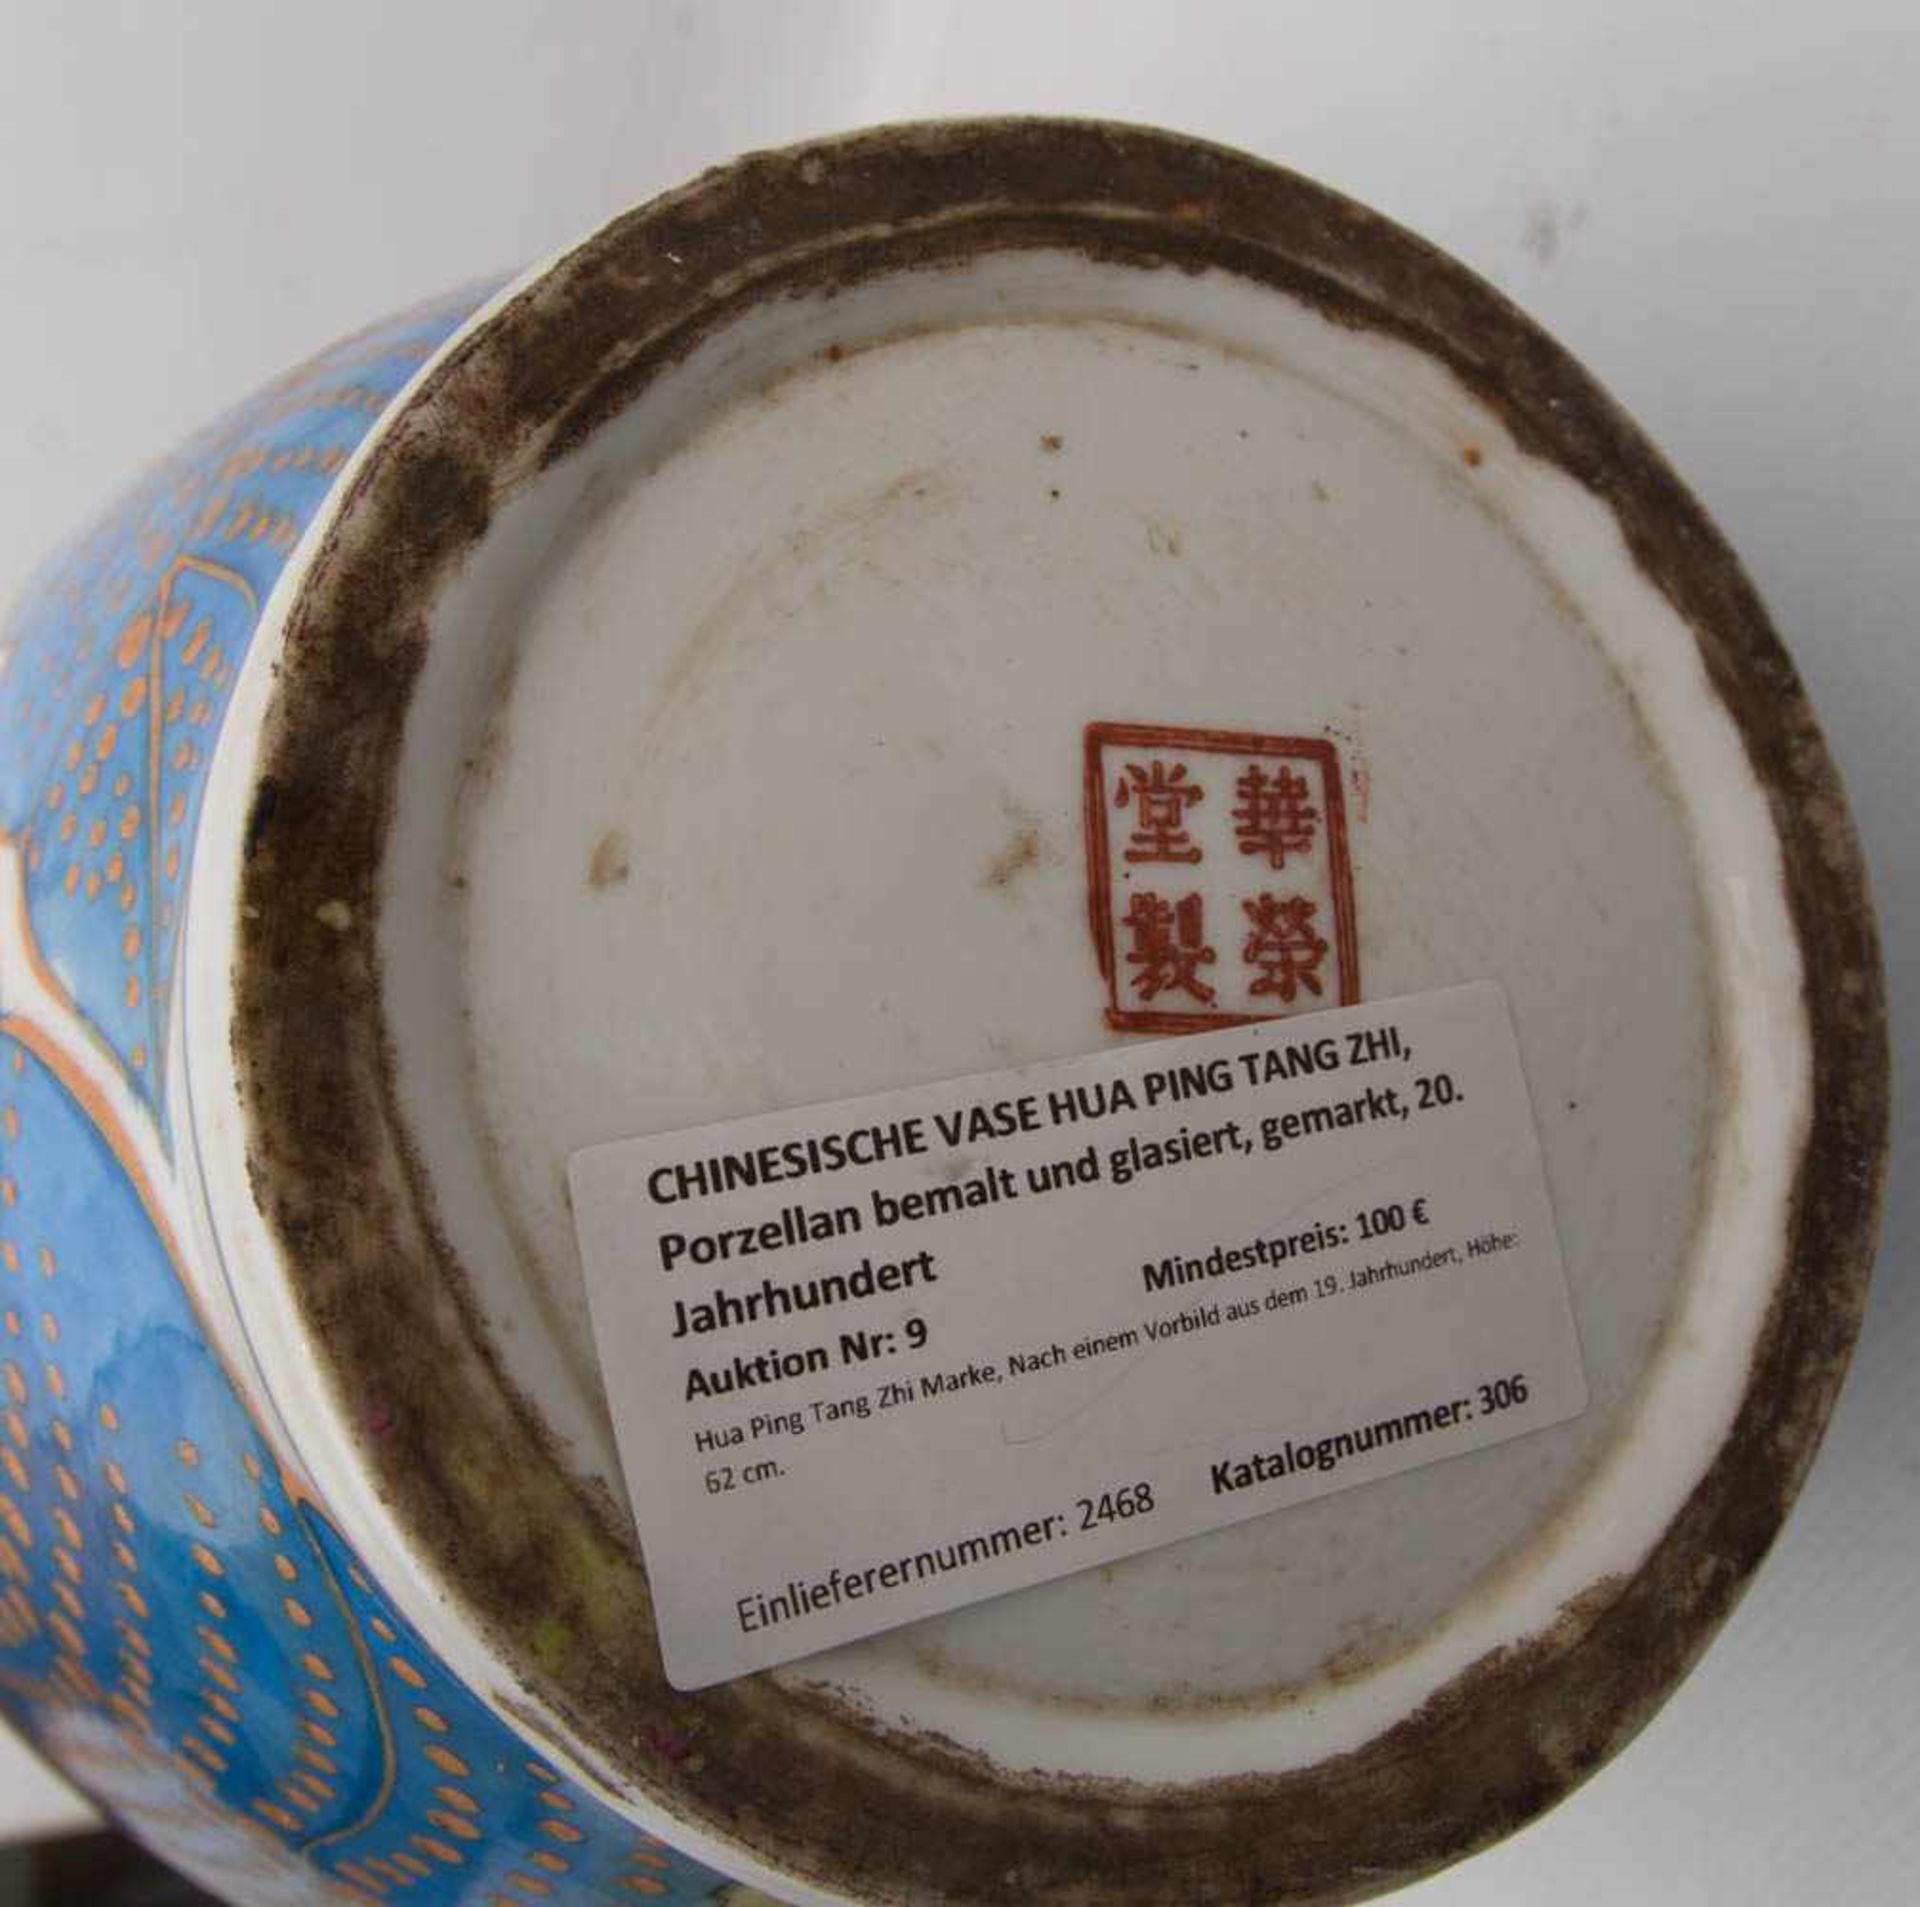 CHINESISCHE VASE HUA PING TANG ZHI, Porzellan bemalt und glasiert, gemarkt, 20. JahrhundertHua - Bild 7 aus 7